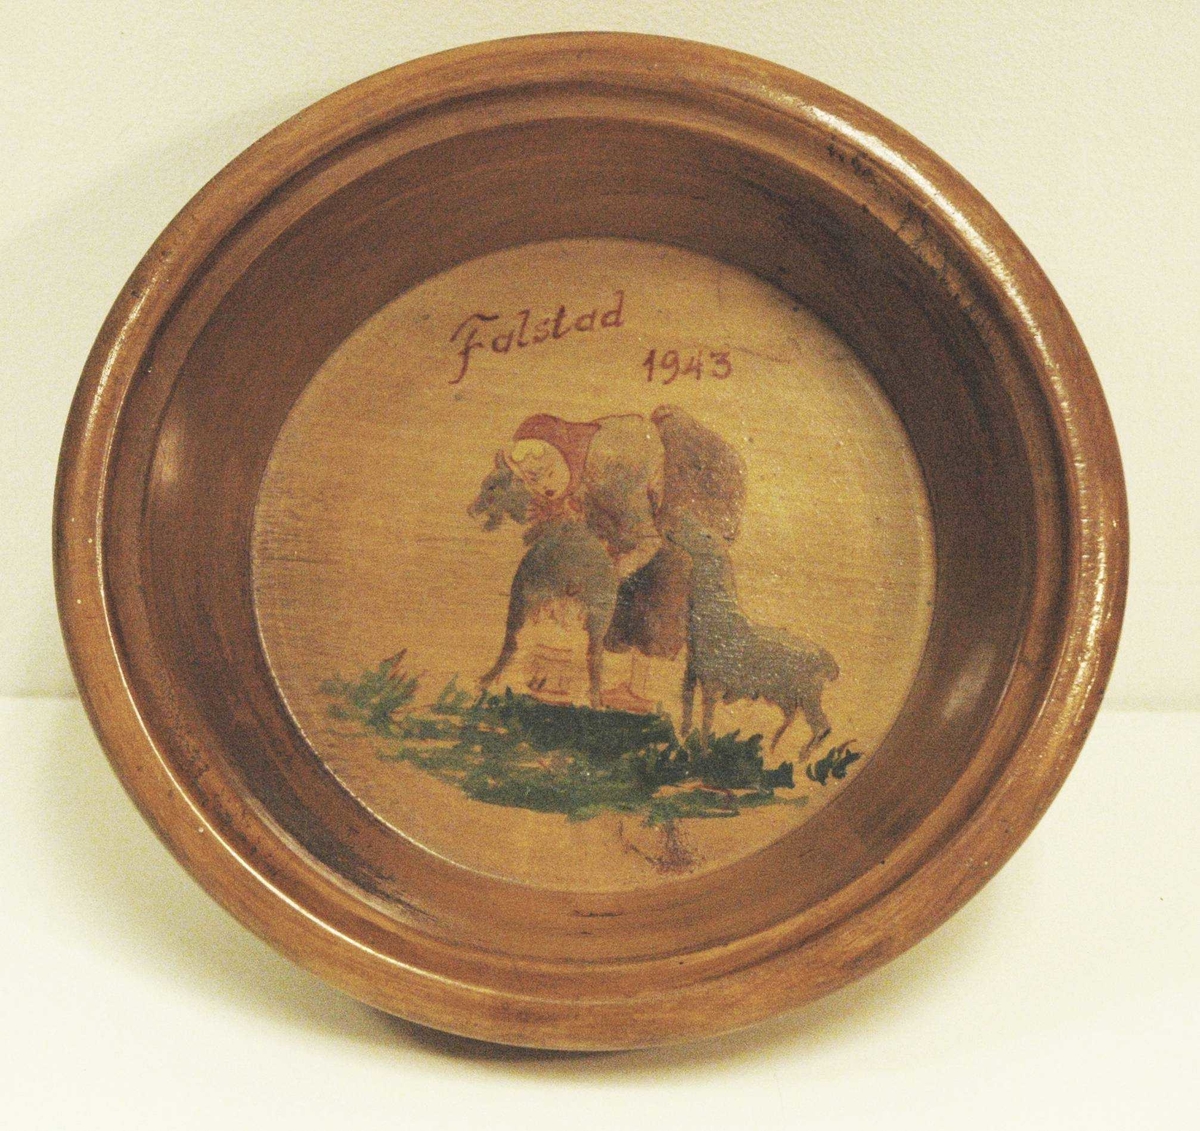 I bunnen av skåla er det malt en kvinne og to geiter (den ene melkes)